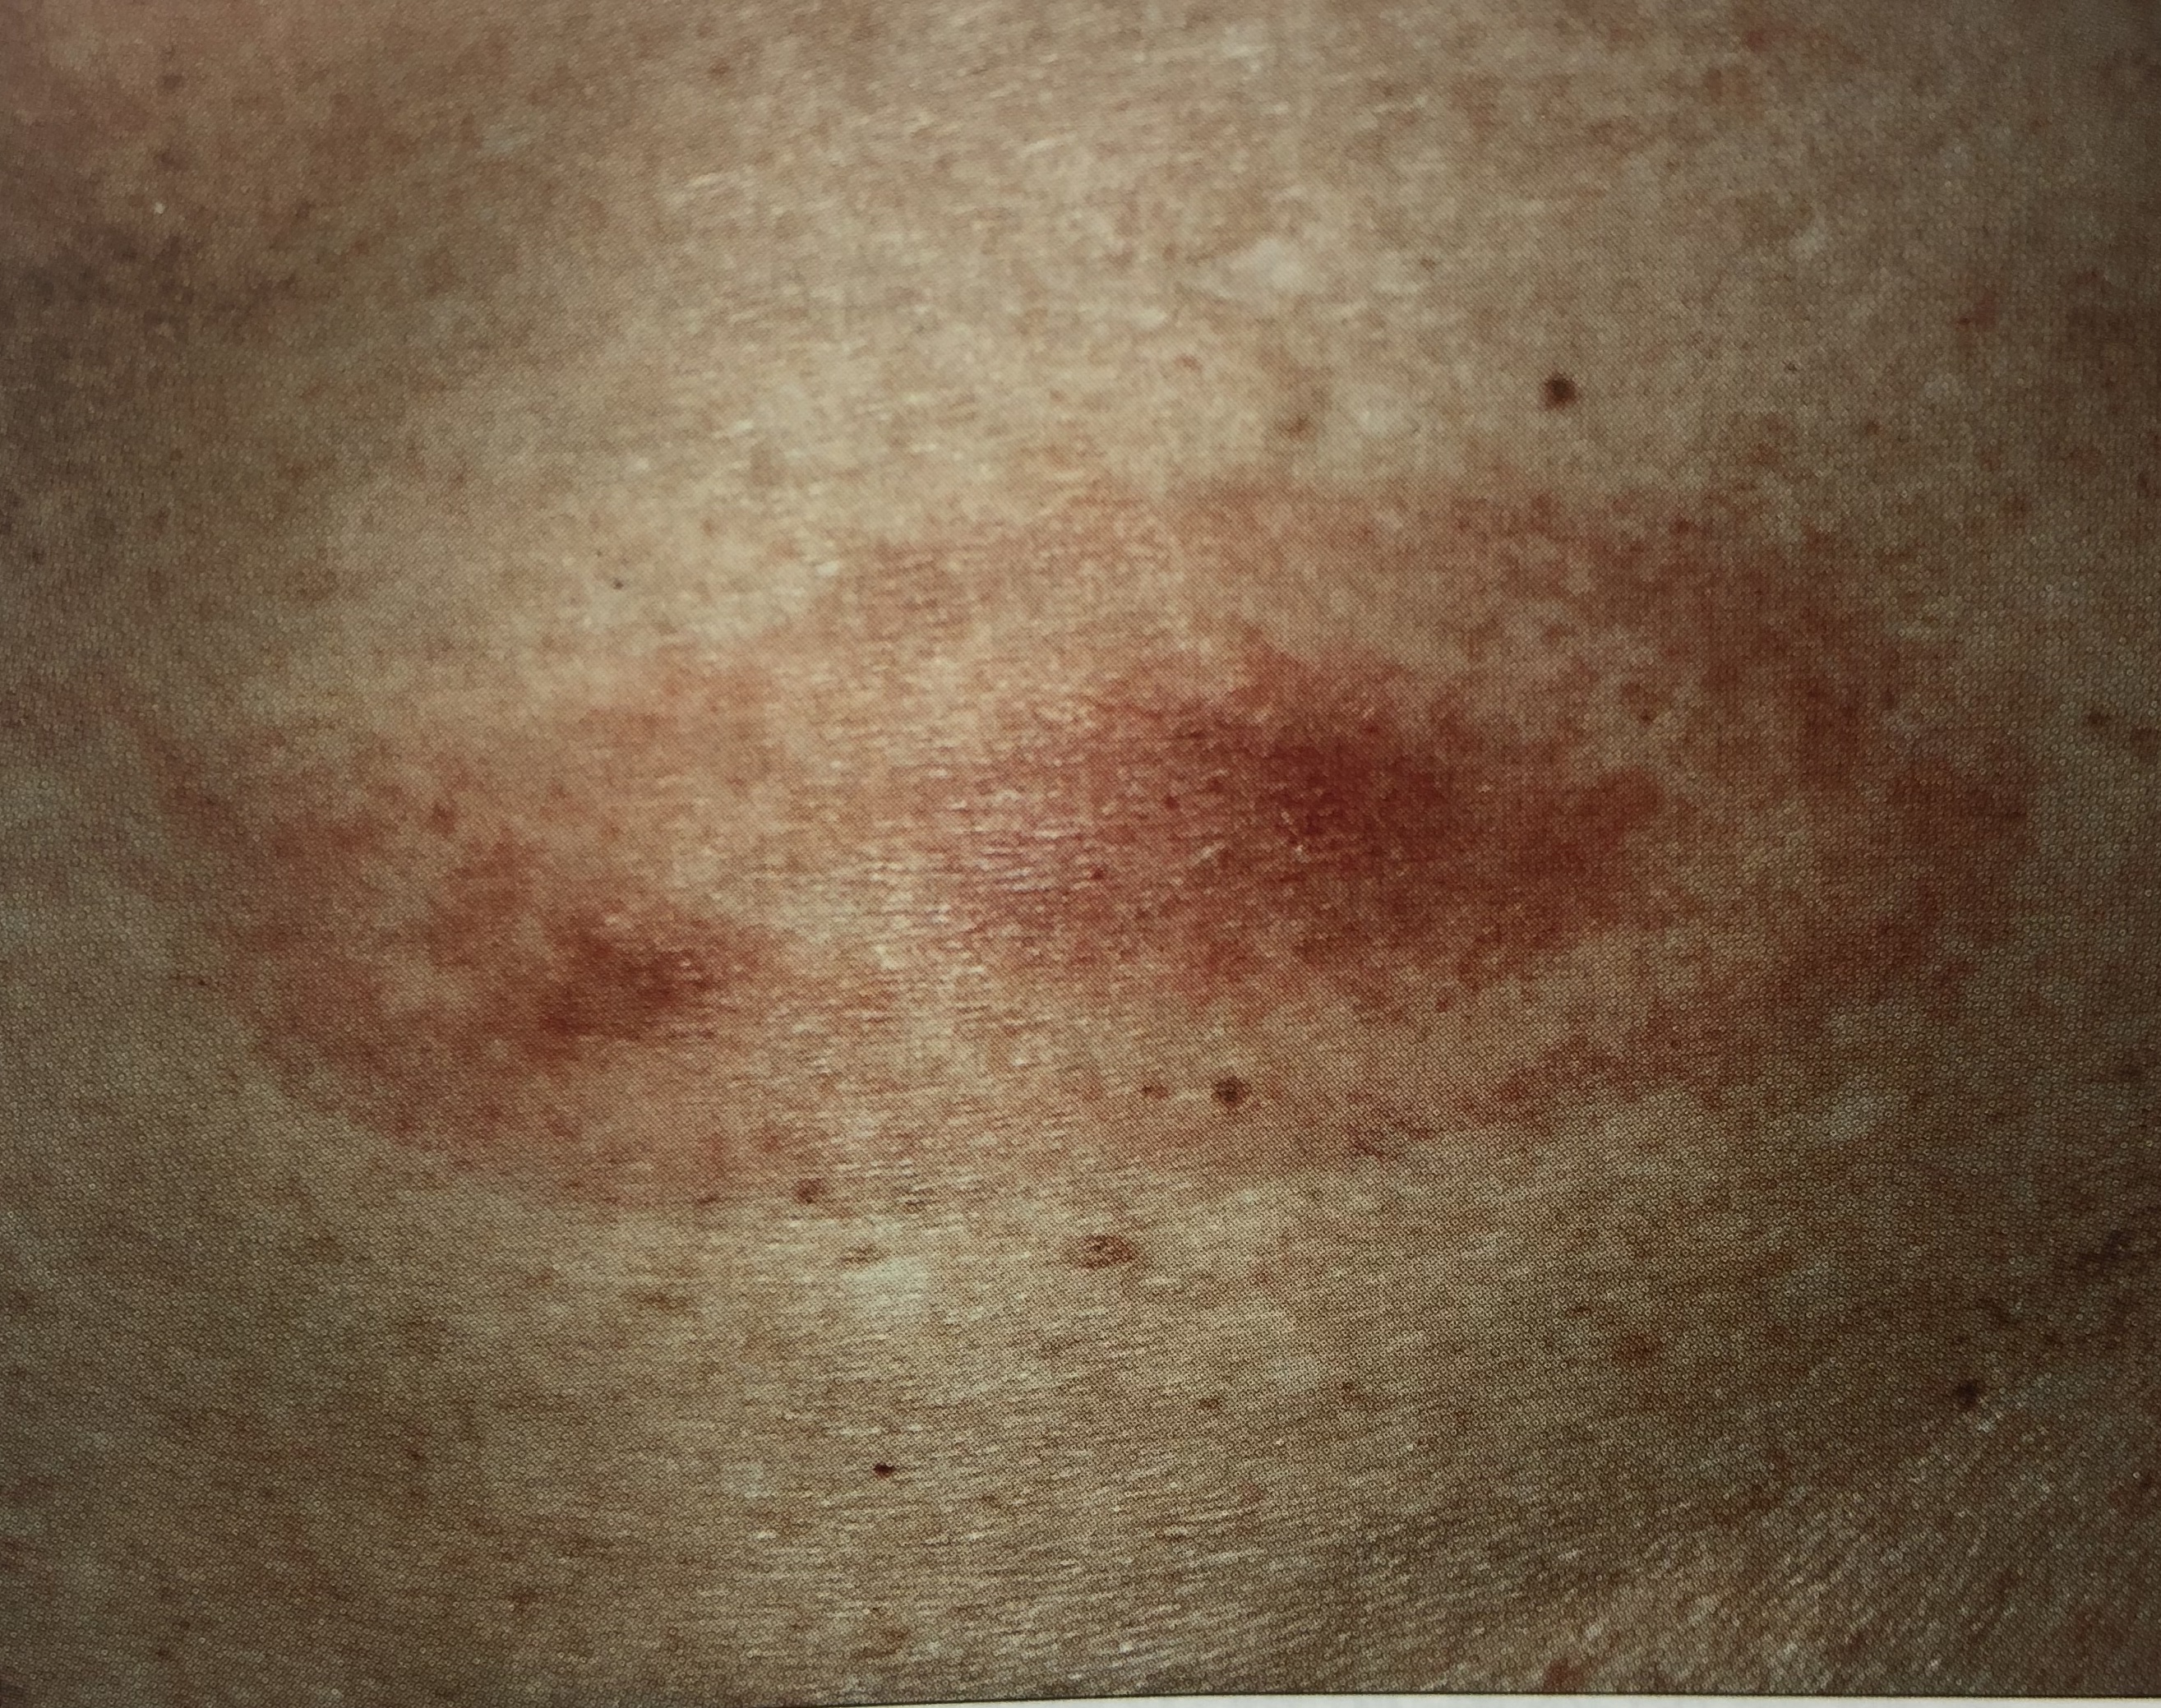 离心性环状红斑癌症图片